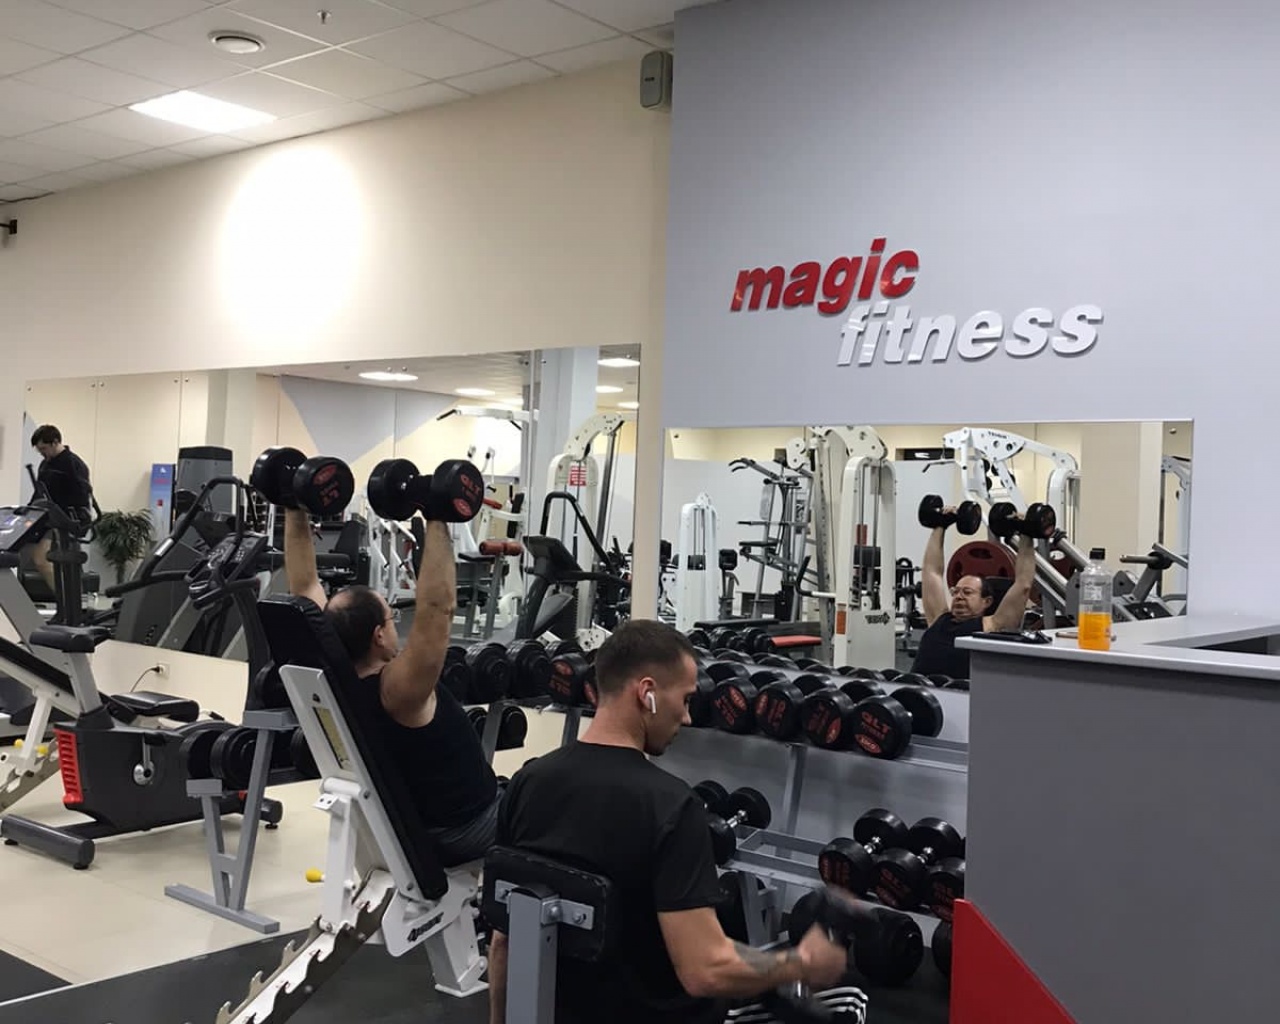 Тренажерный зал, фитнес клуб Magic fitness в Иркутске